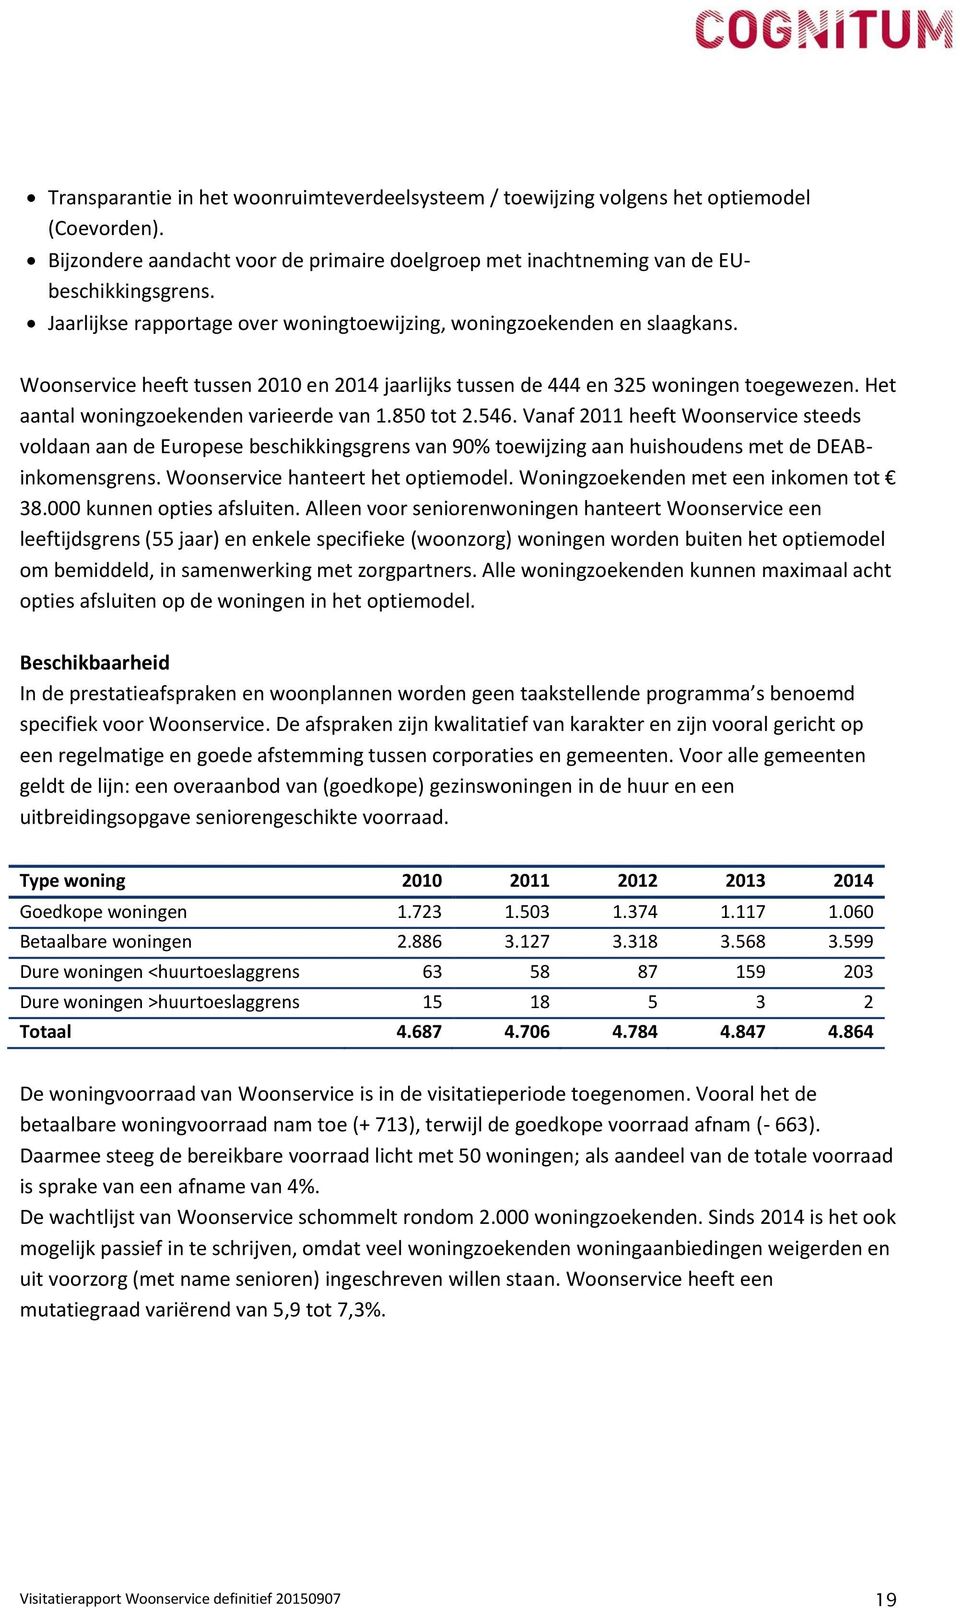 Het aantal woningzoekenden varieerde van 1.850 tot 2.546. Vanaf 2011 heeft Woonservice steeds voldaan aan de Europese beschikkingsgrens van 90% toewijzing aan huishoudens met de DEABinkomensgrens.